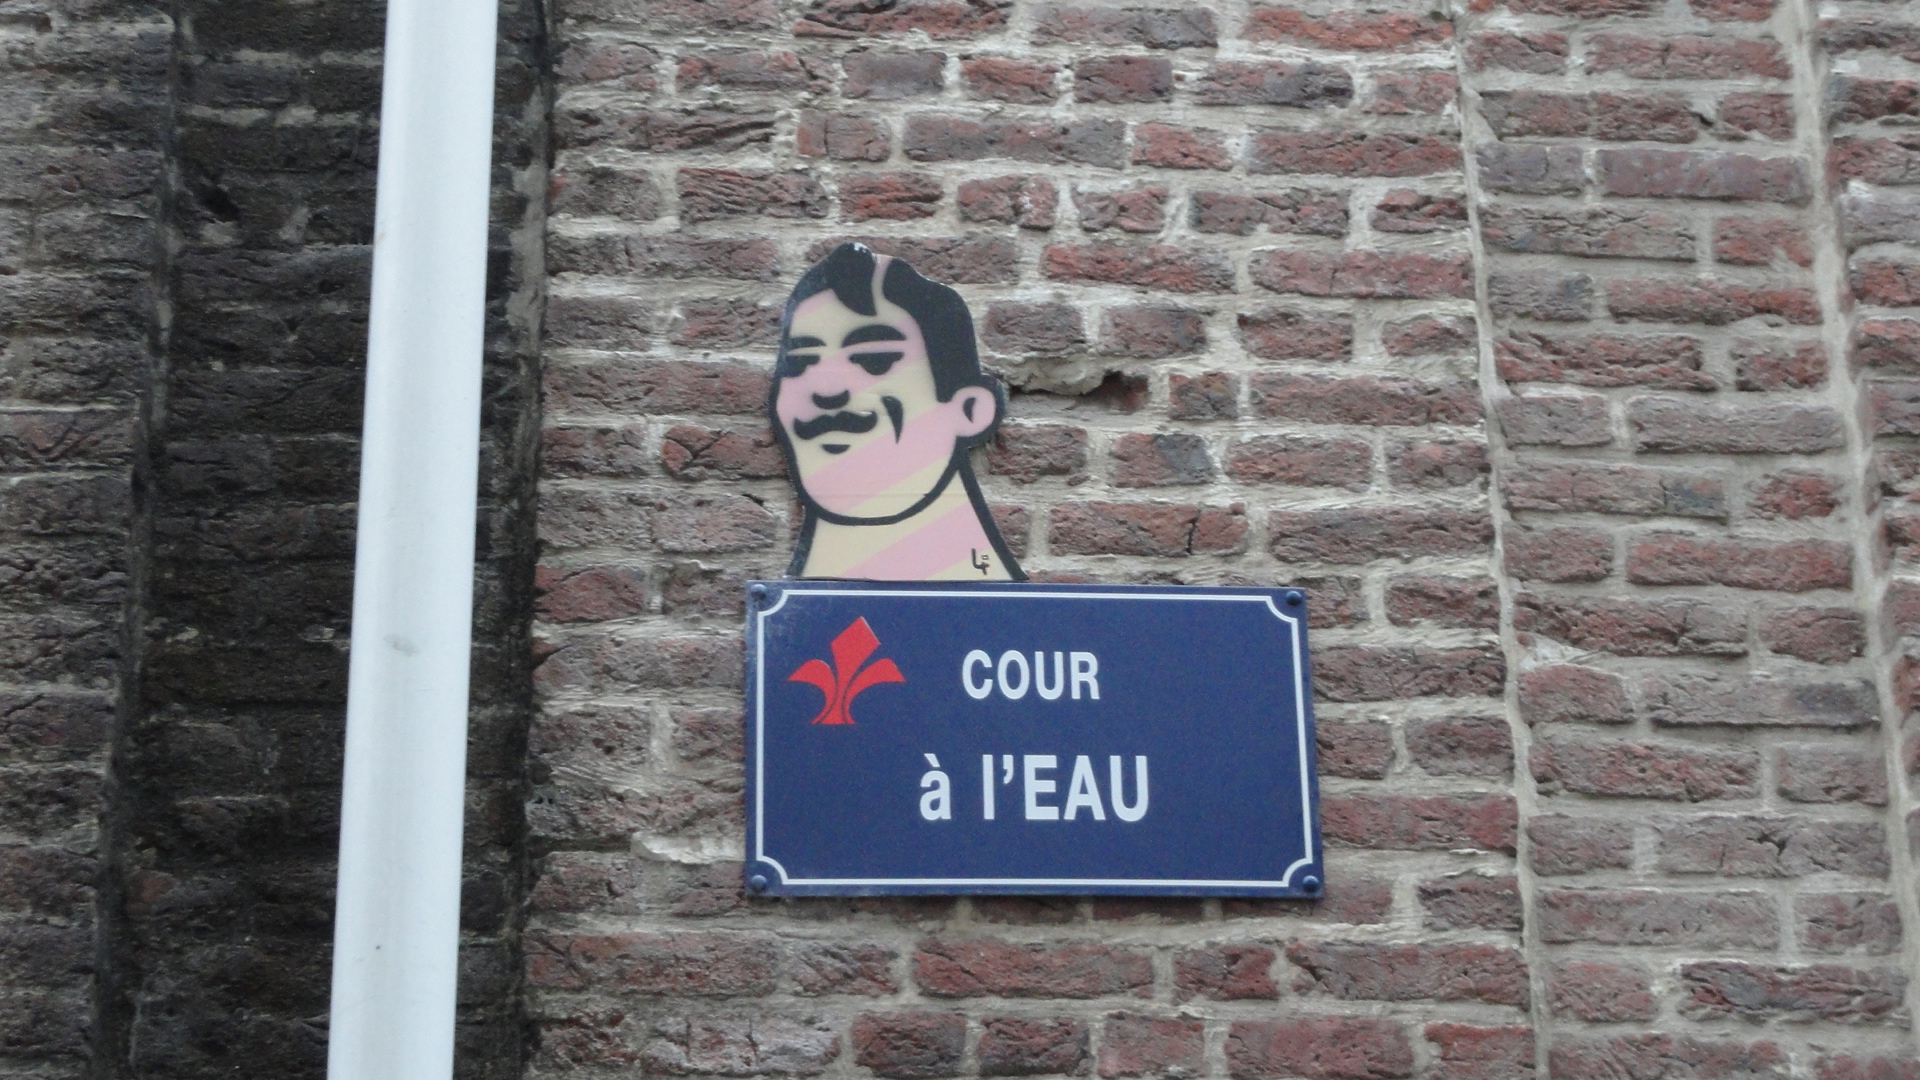 Vieux Lille - Cour à l'eau - Street art